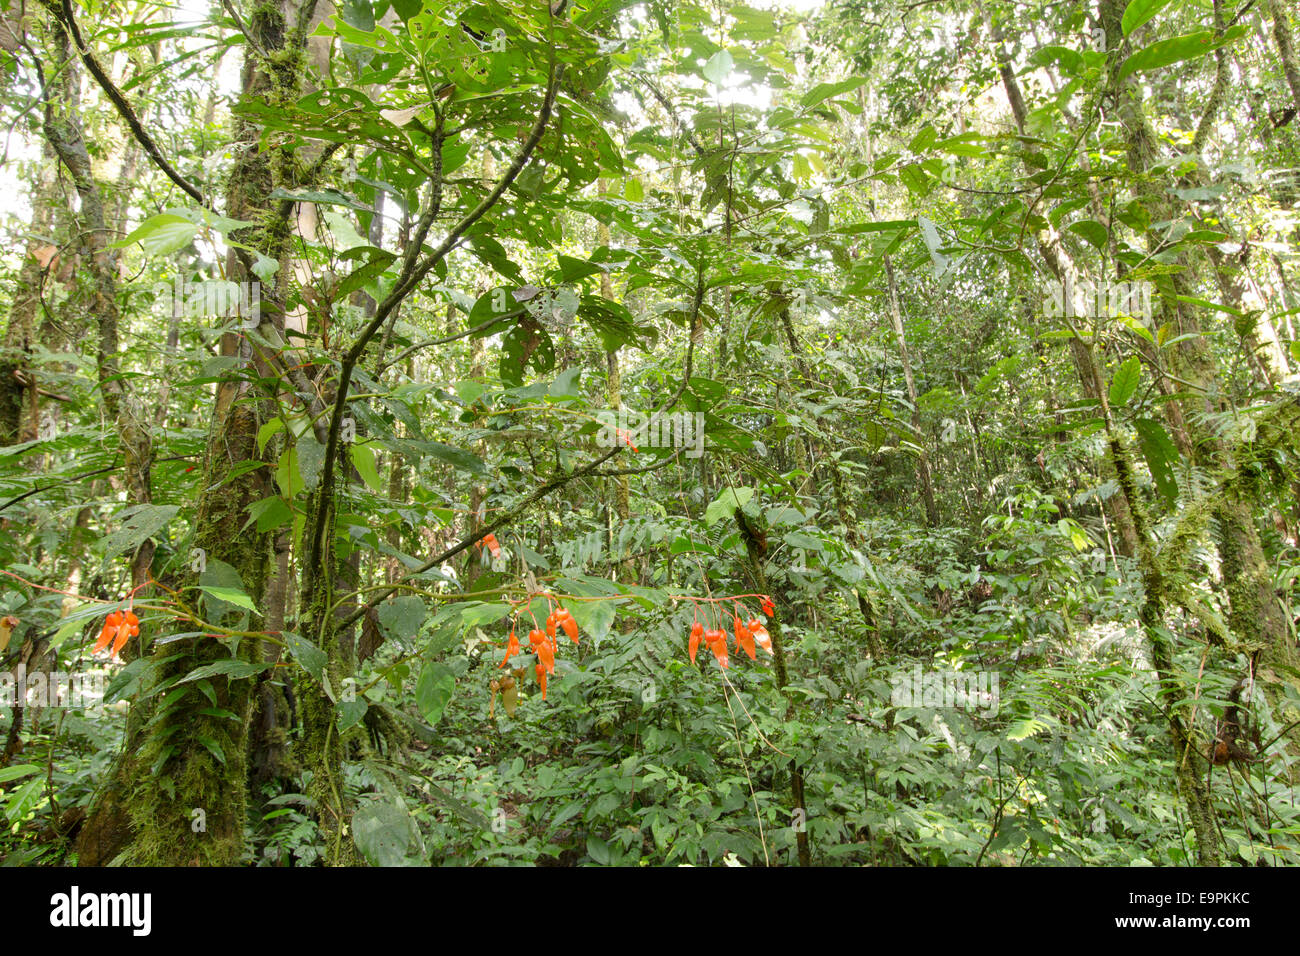 Interno della foresta pluviale tropicale in Amazzonia ecuadoriana con una fioritura di Begonia in primo piano Foto Stock